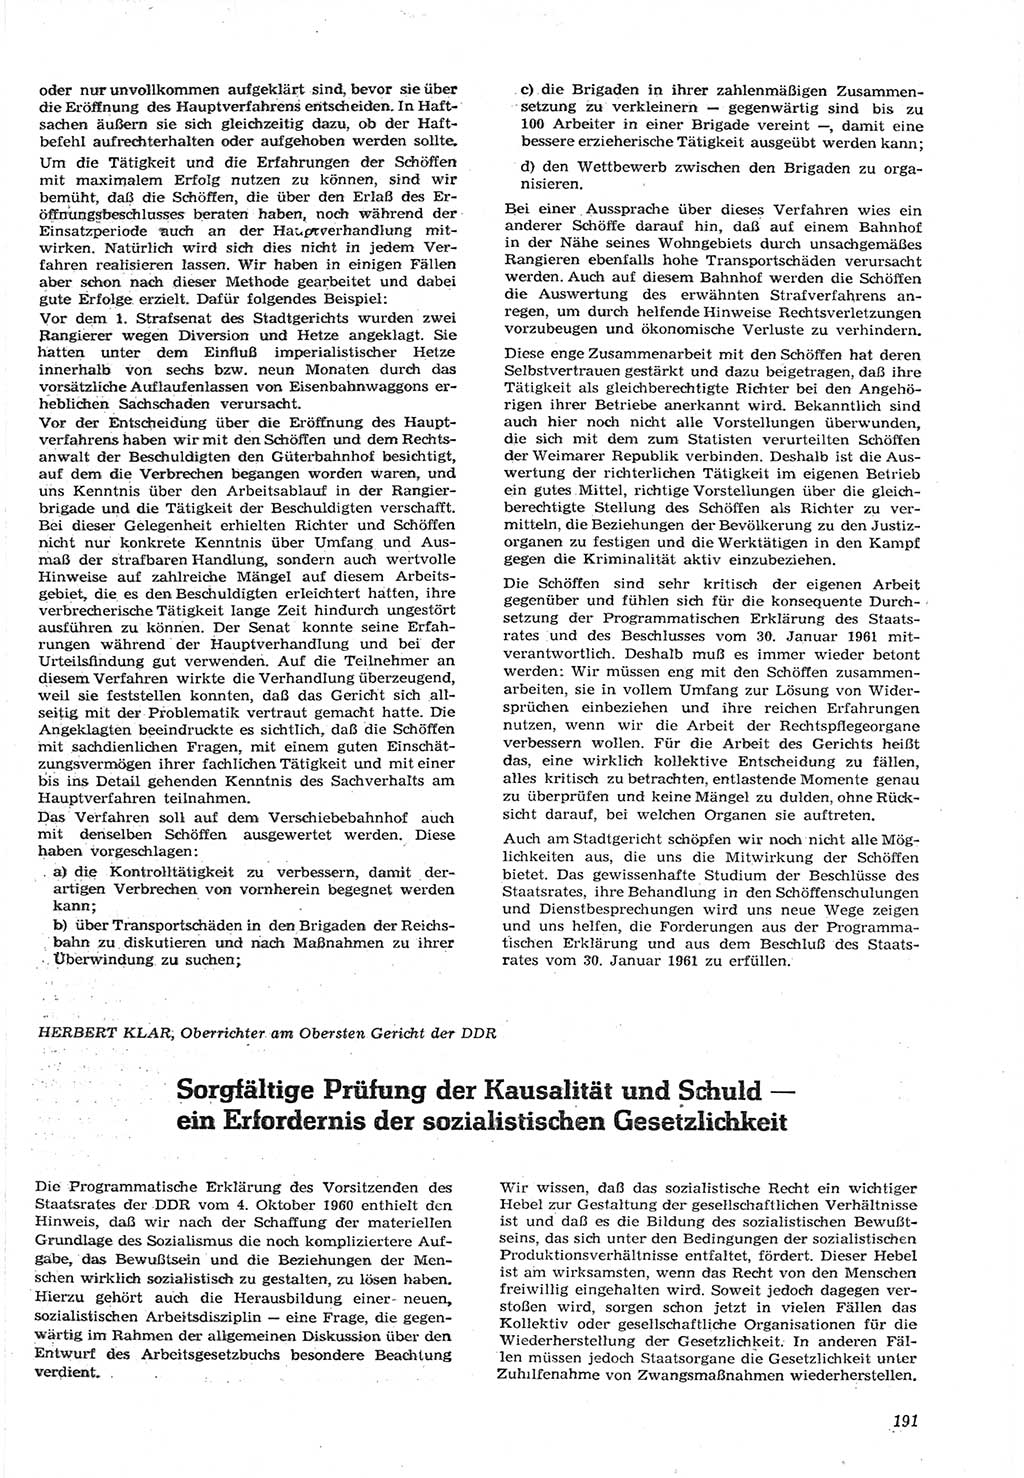 Neue Justiz (NJ), Zeitschrift für Recht und Rechtswissenschaft [Deutsche Demokratische Republik (DDR)], 15. Jahrgang 1961, Seite 191 (NJ DDR 1961, S. 191)